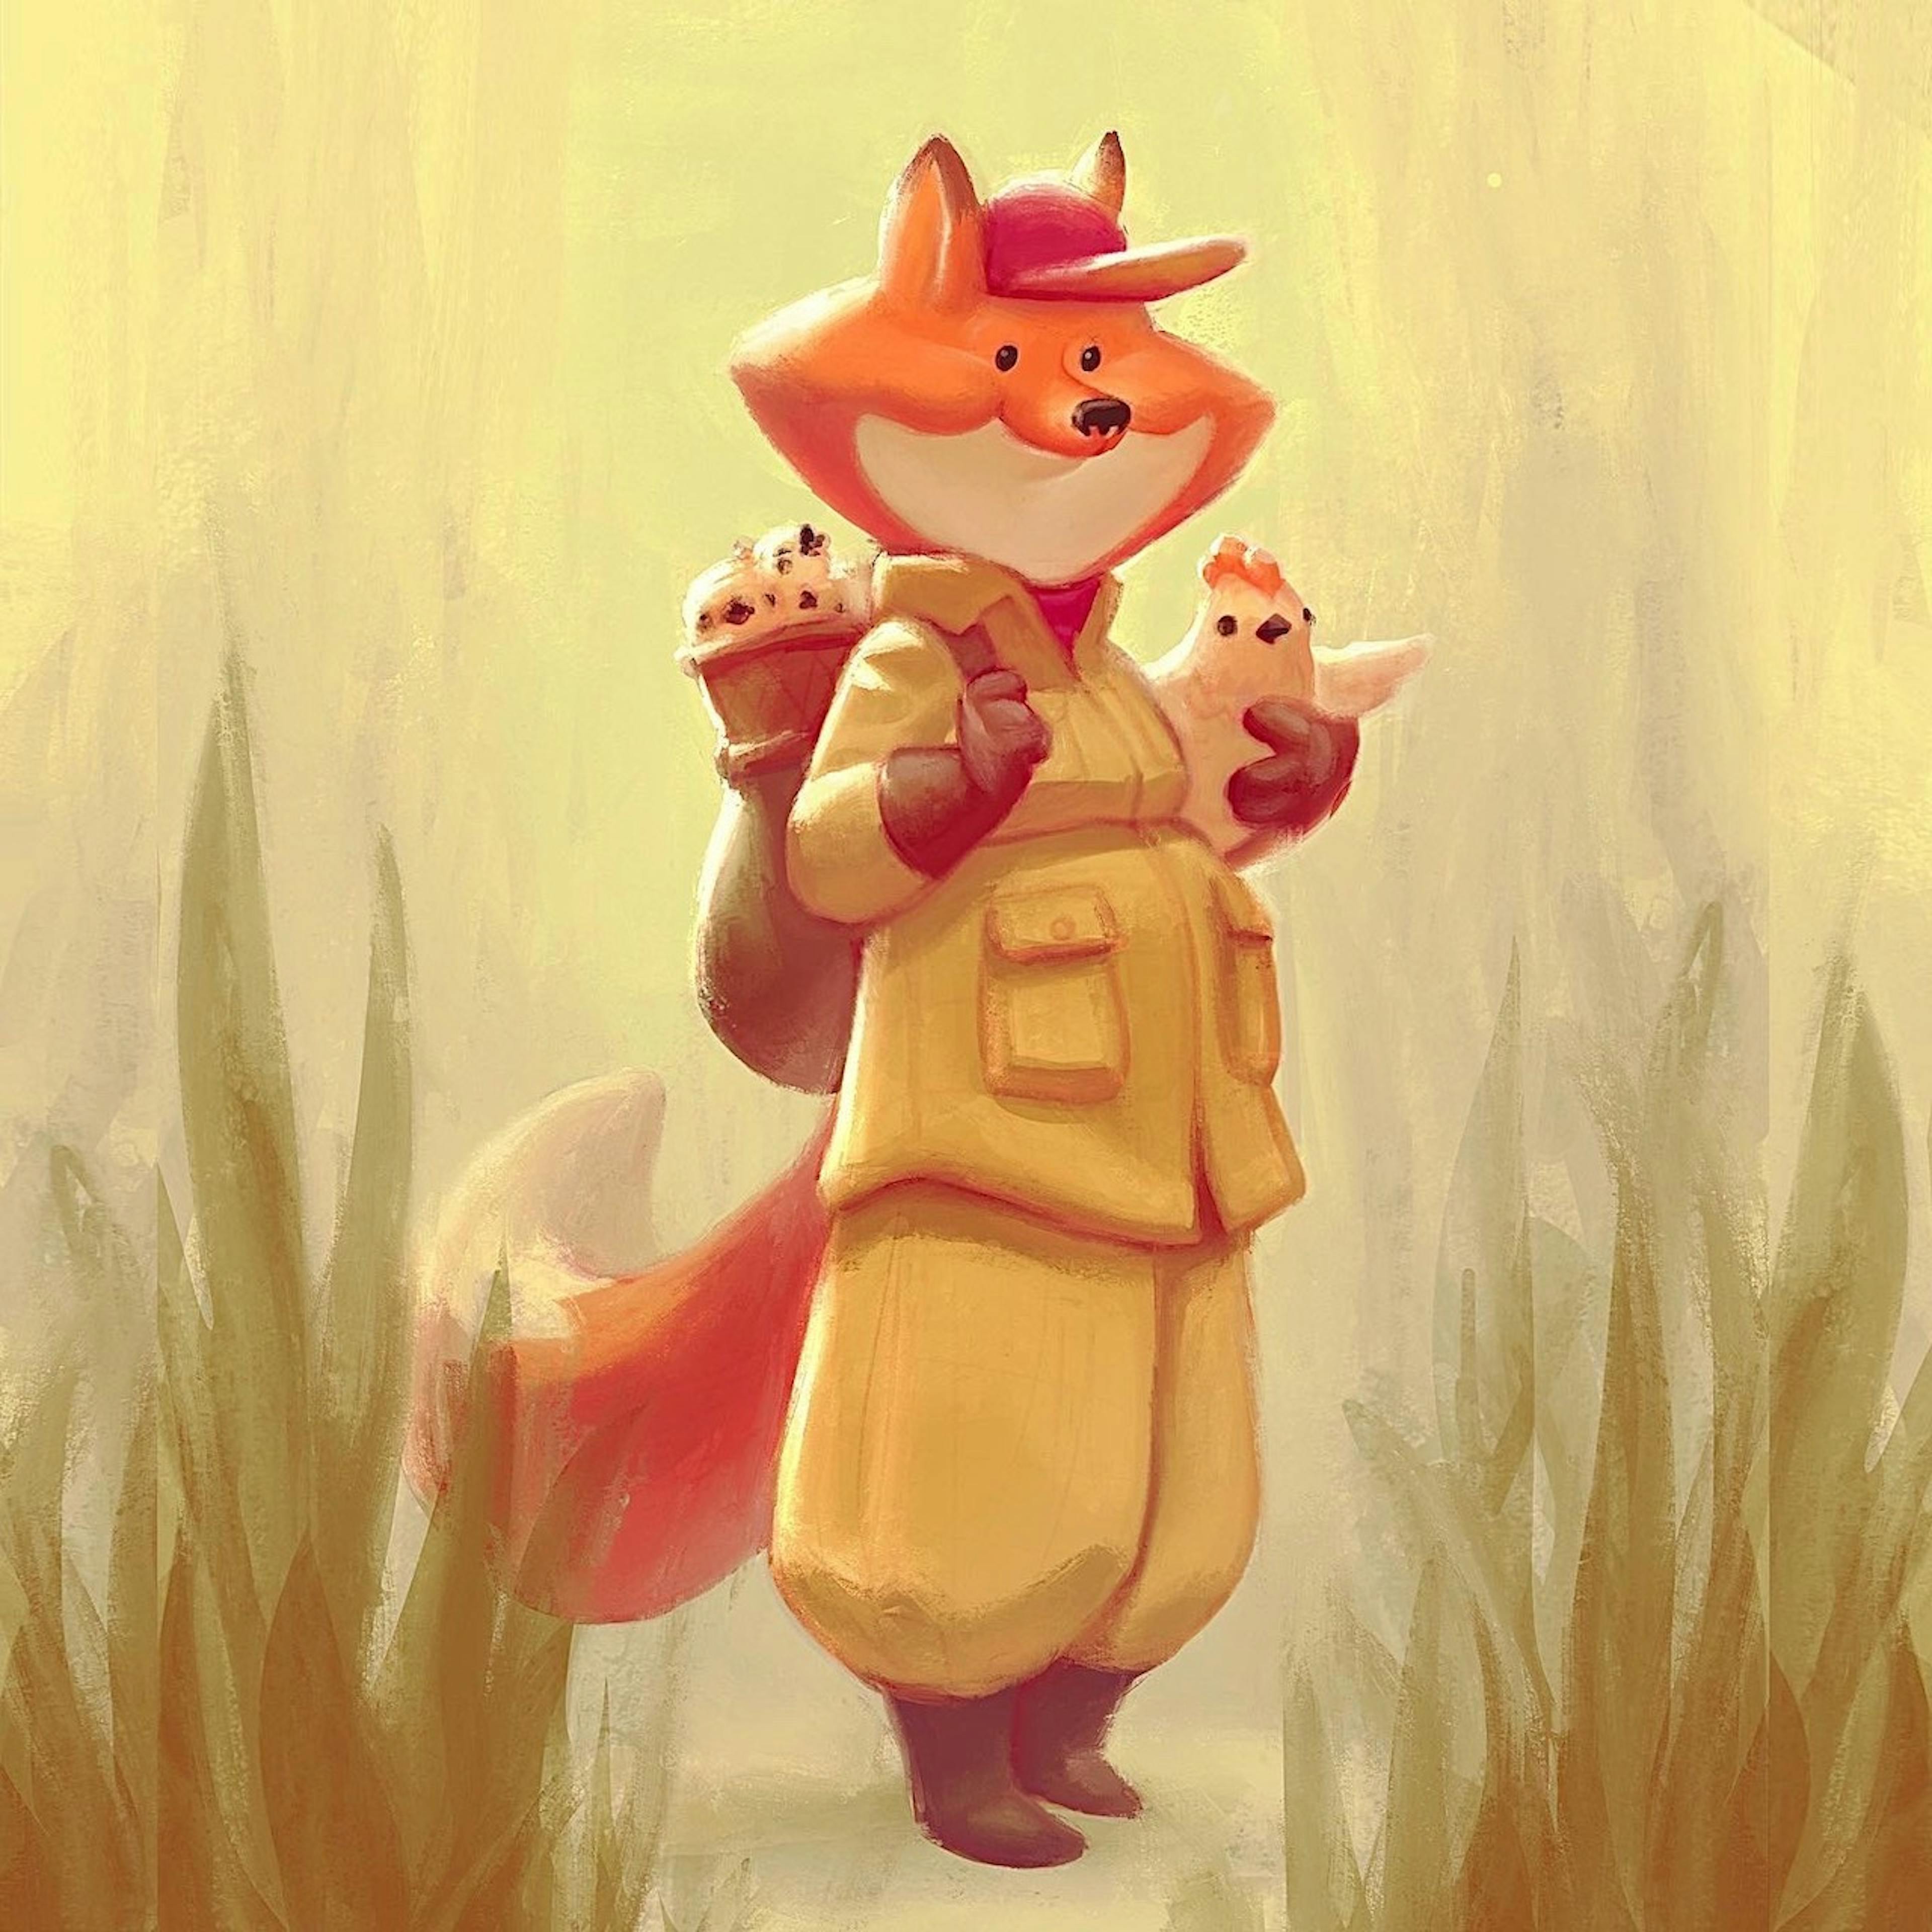 A fox guide